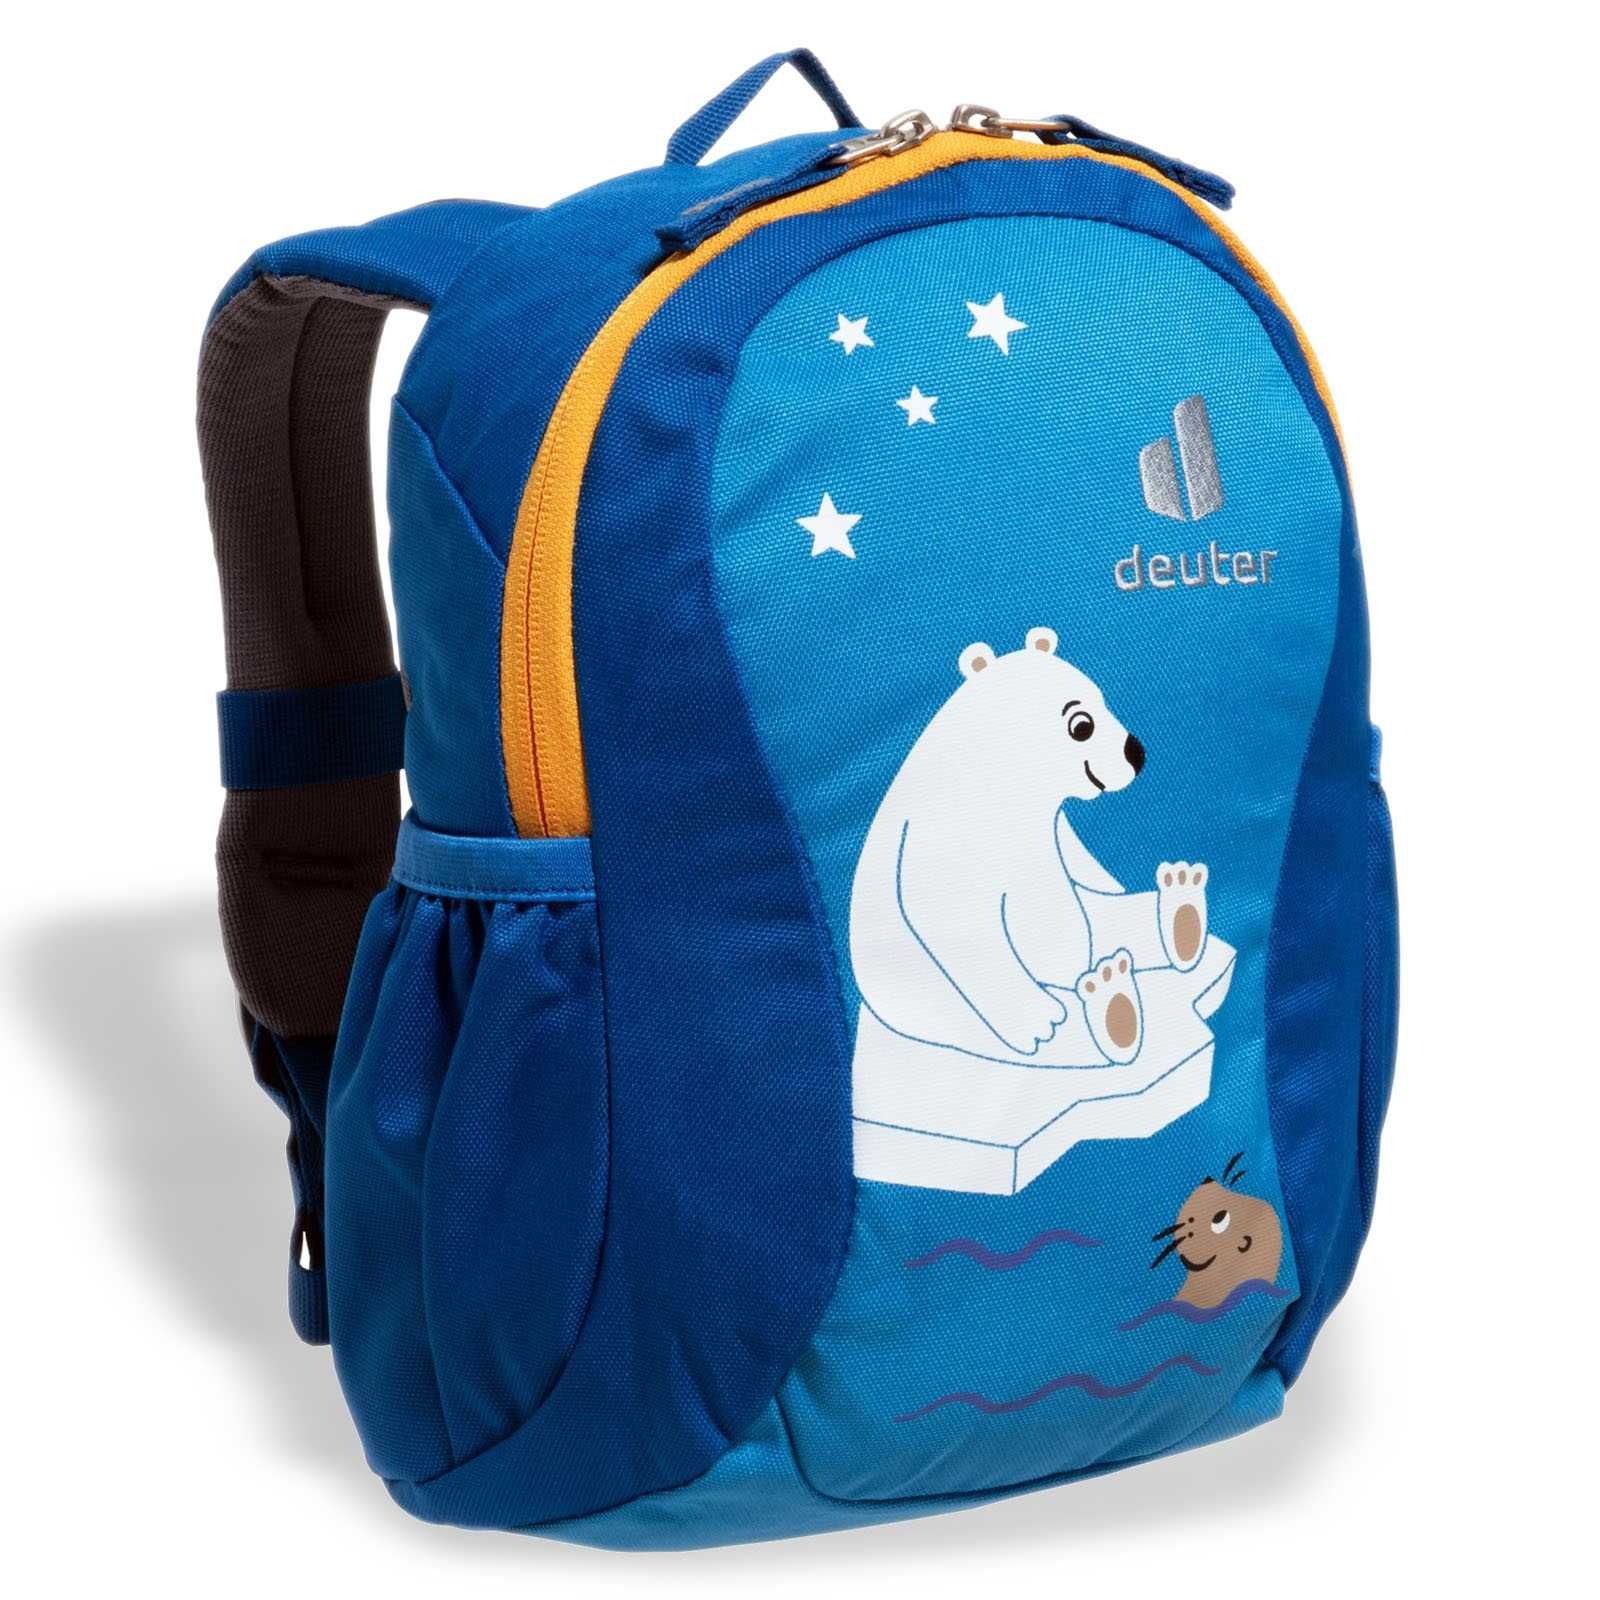 Дитячий рюкзак Deuter Pico Azure-Lapis 5 літрів